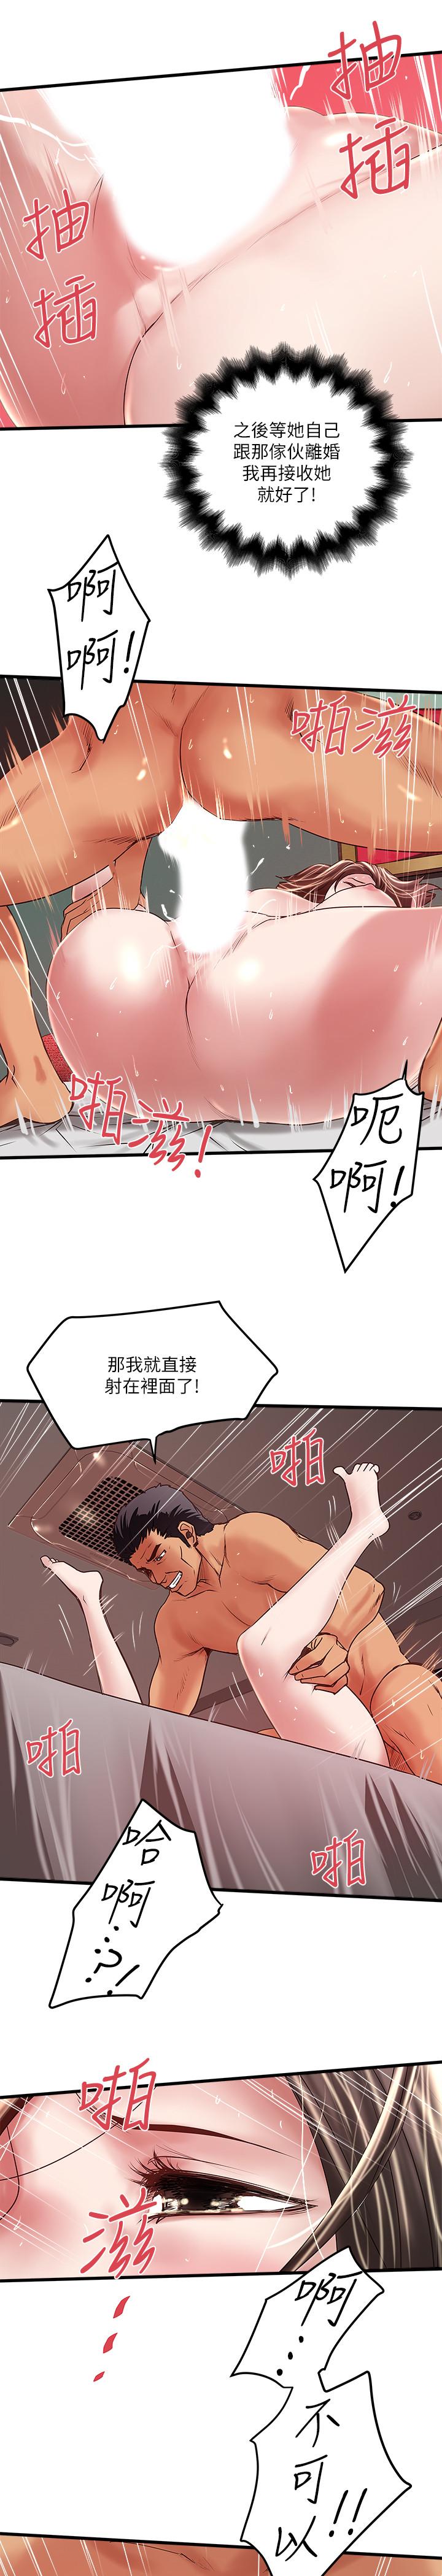 韩国污漫画 下女,初希 第53话-用下面承接日的欲望 18